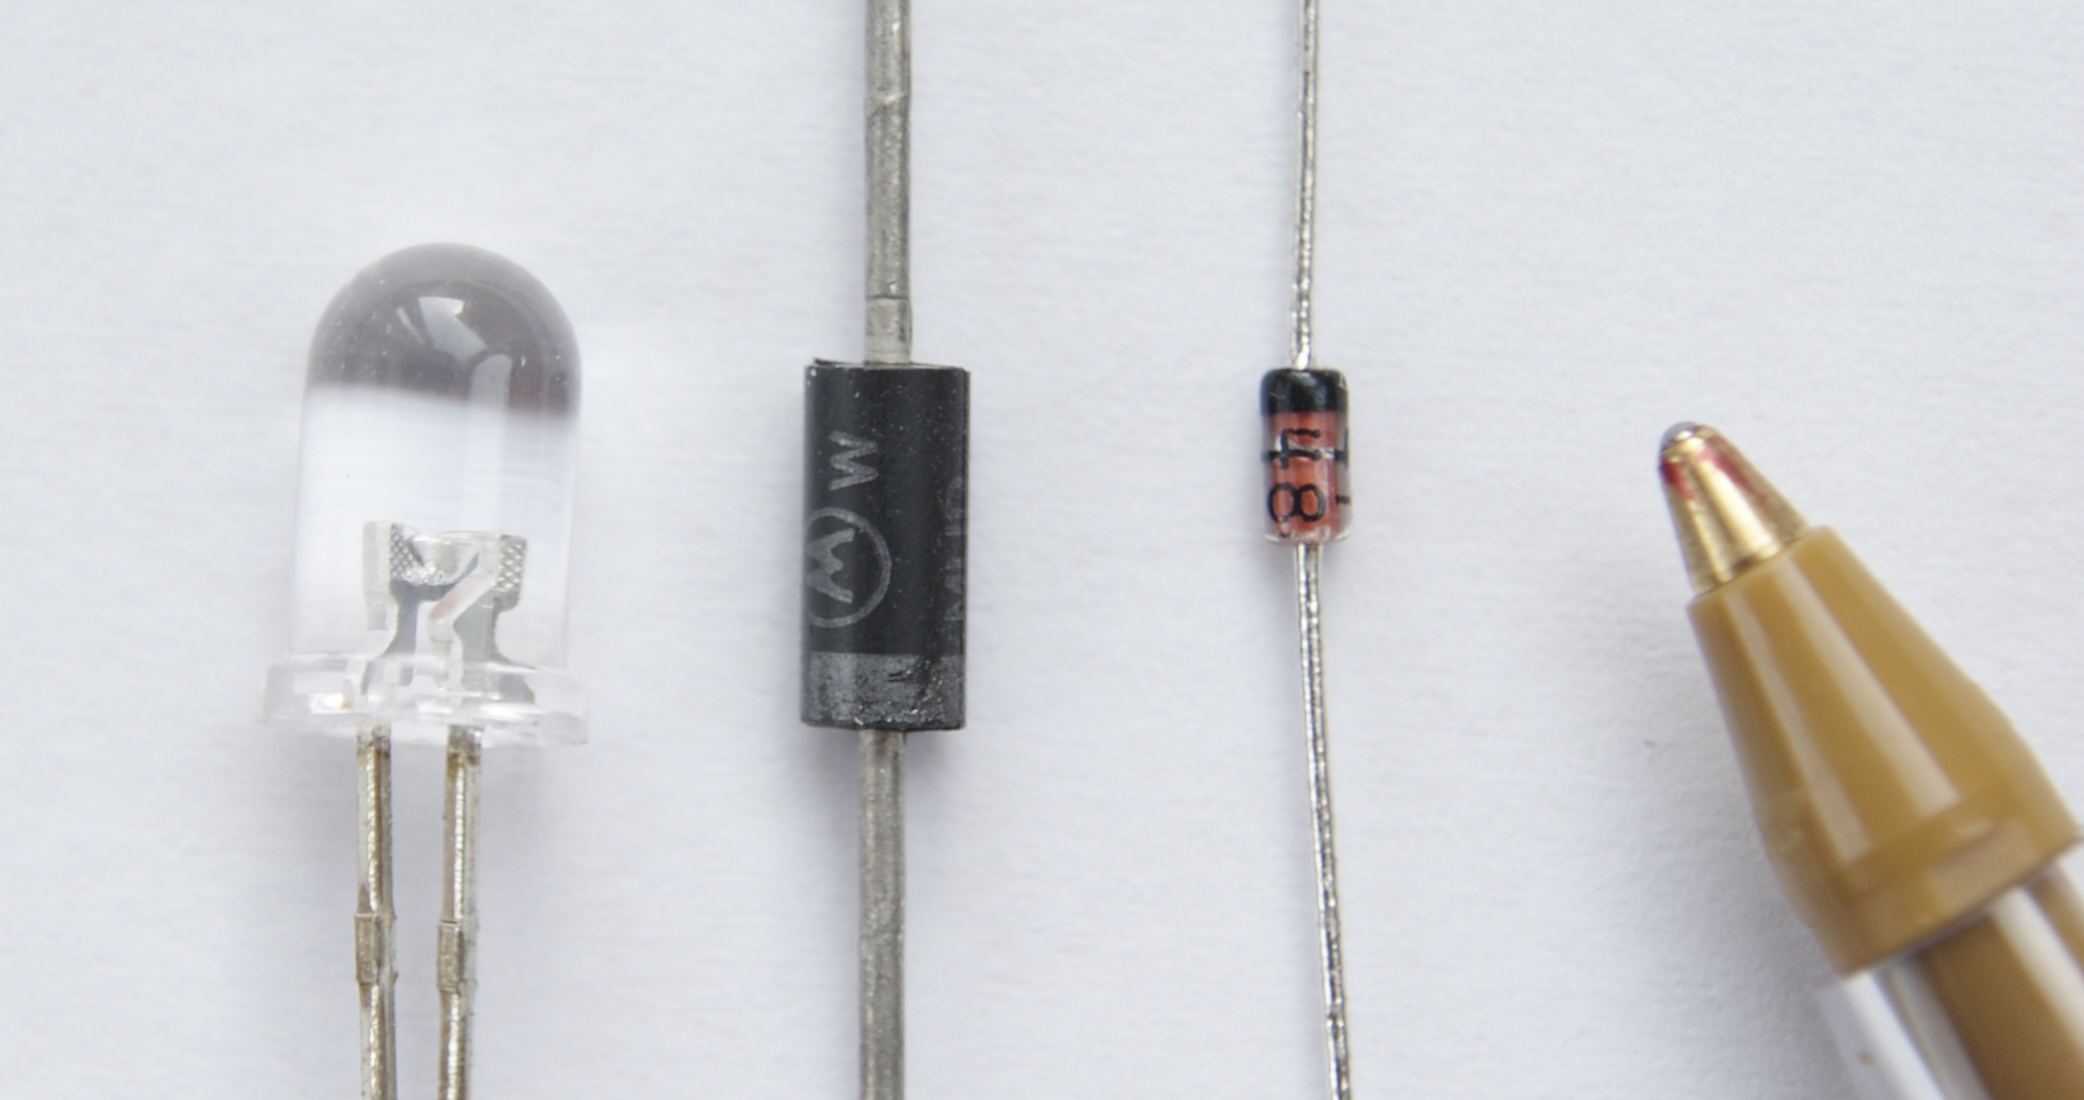 Fotografía de varios diodos semiconductores.